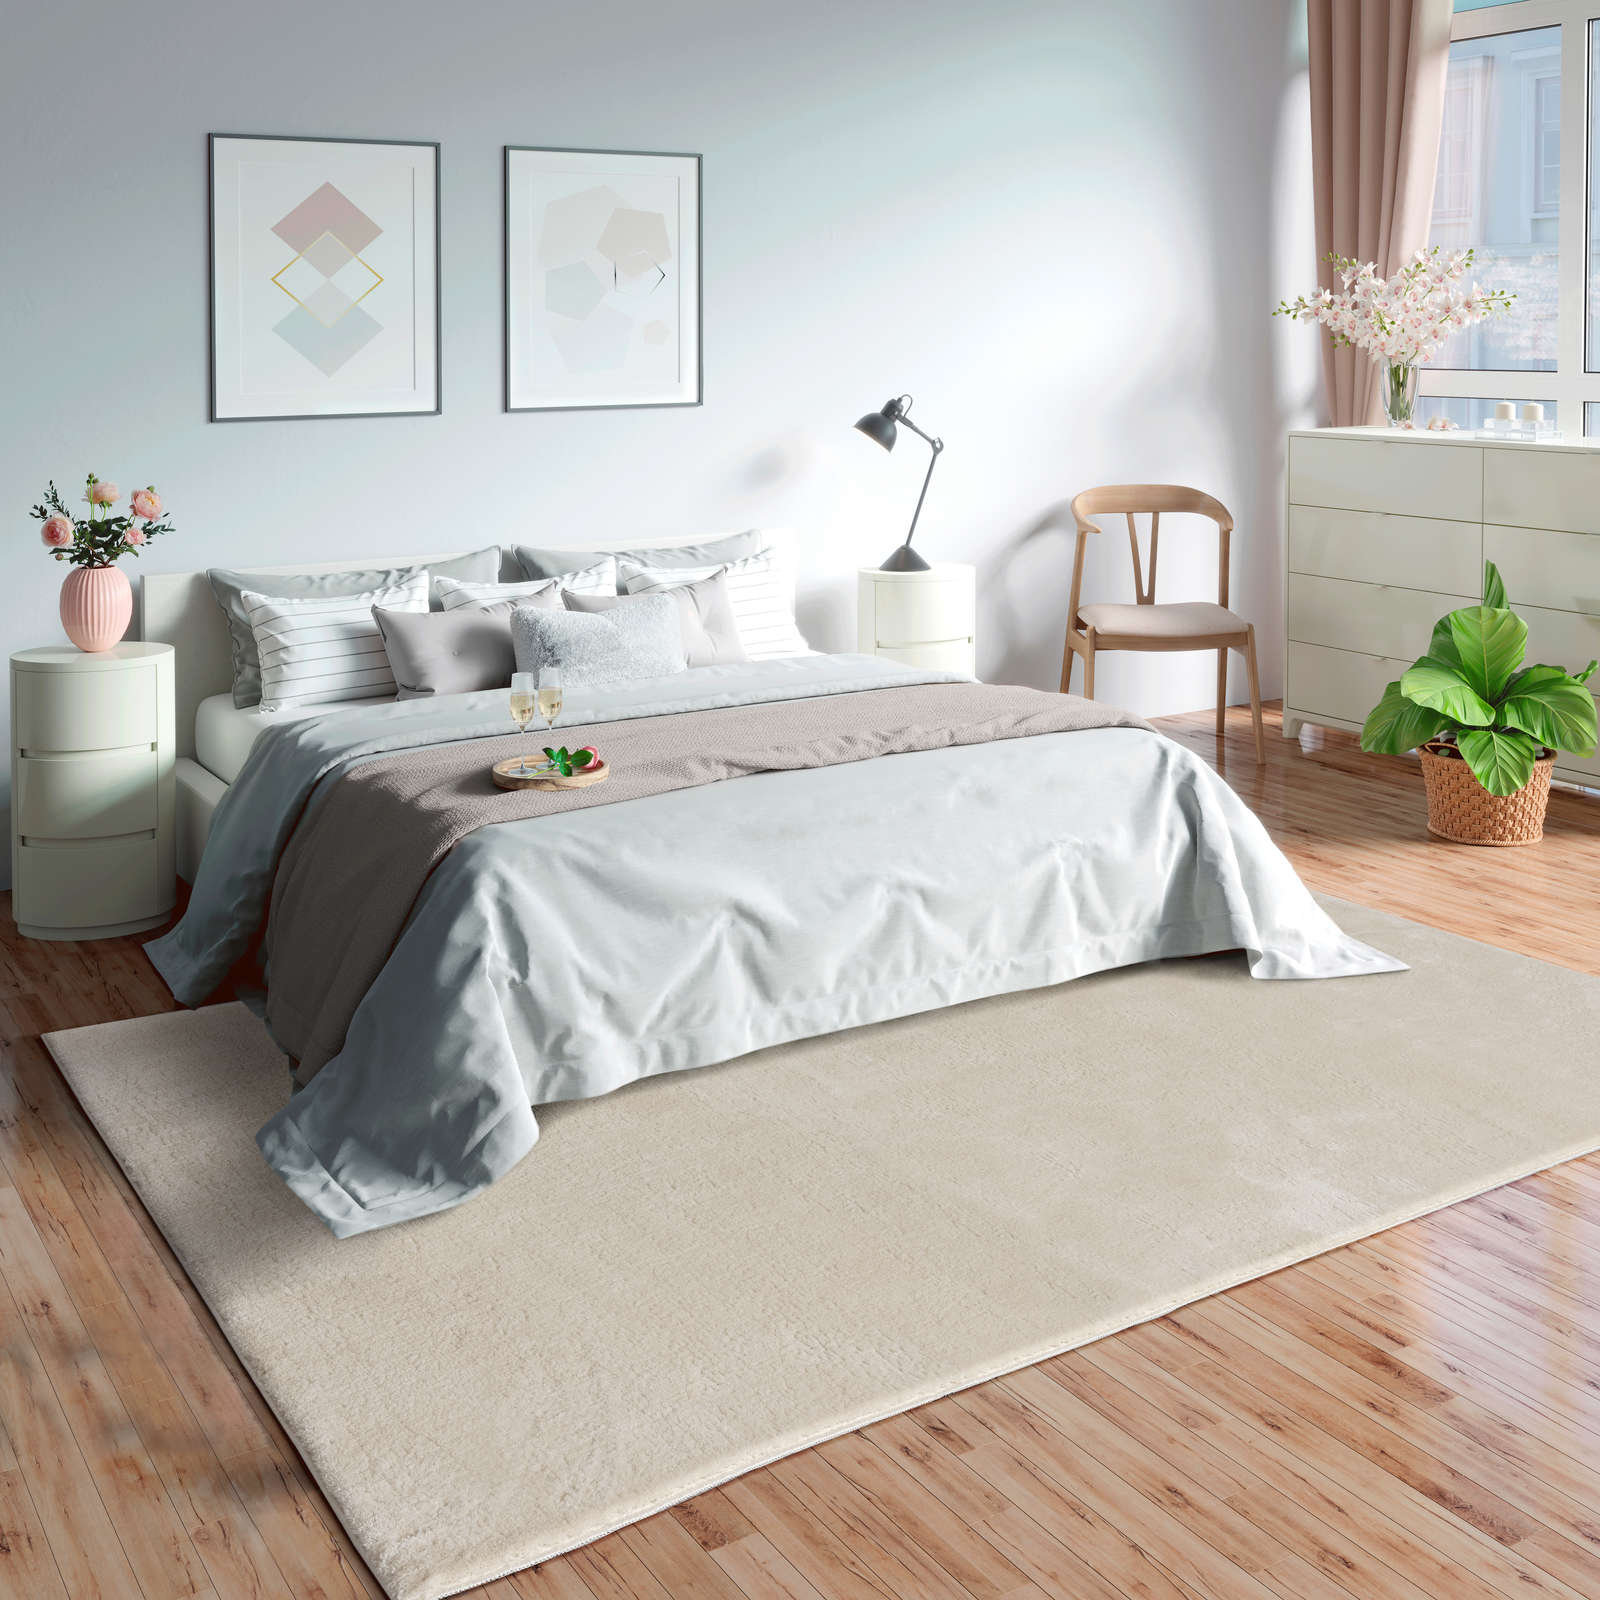             Zacht hoogpolig tapijt in beige - 290 x 200 cm
        